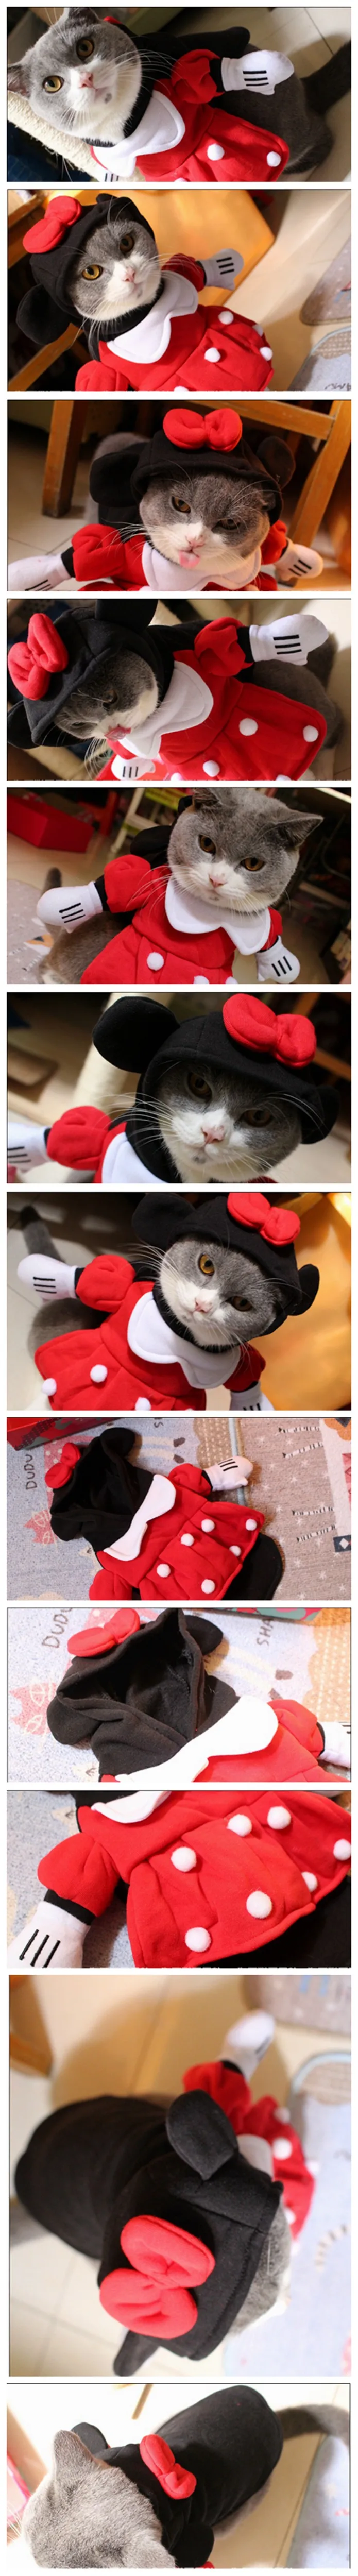 [MPK cat costumes] Забавное платье для кошки Минни, поставляется с шапочкой